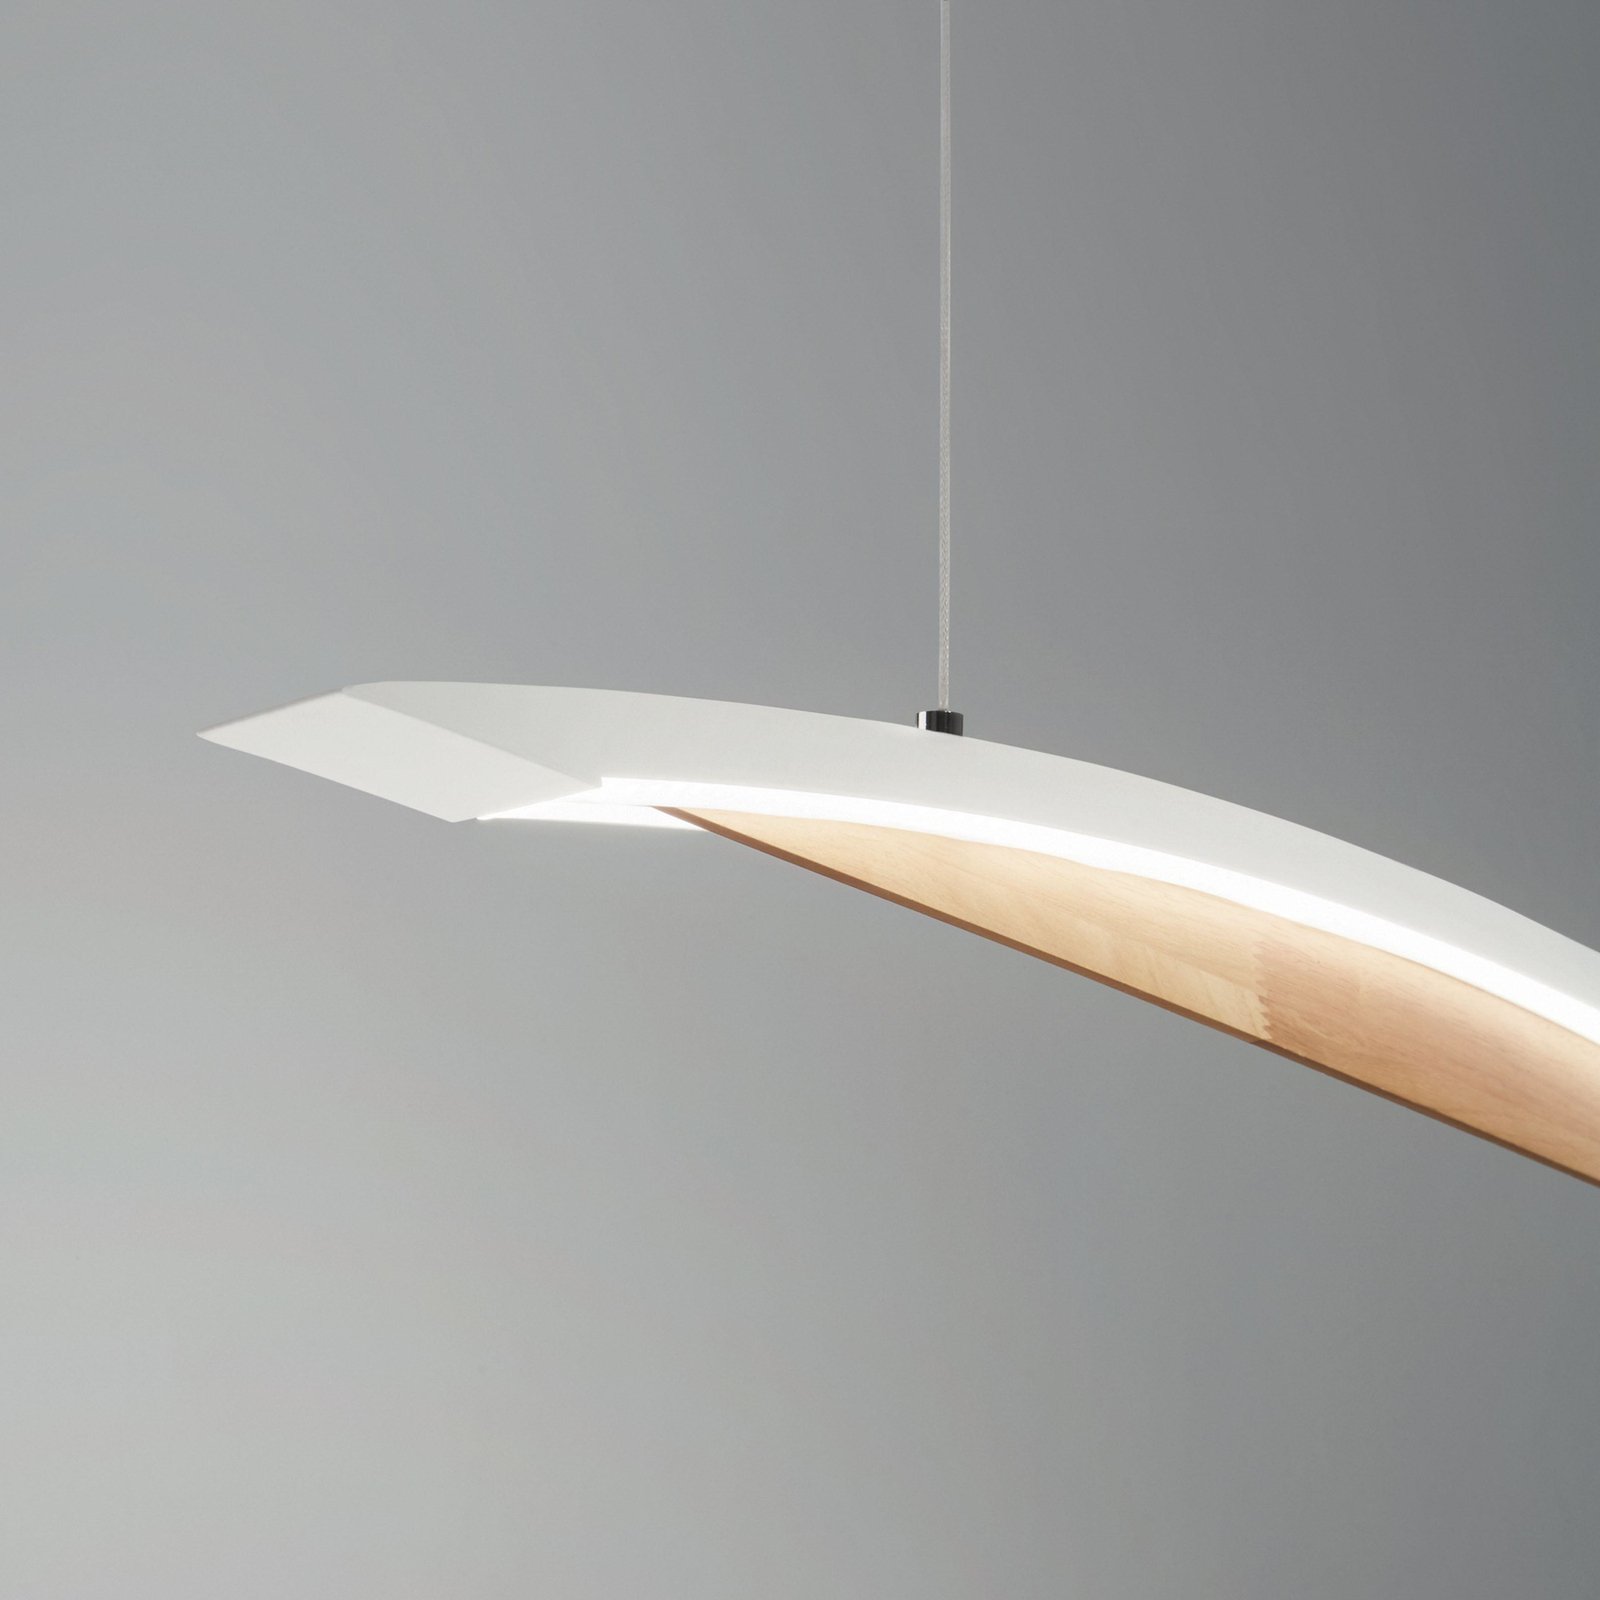 Cordoba LED viseća svjetiljka, dužina 110 cm, metal/drvo, mogućnost